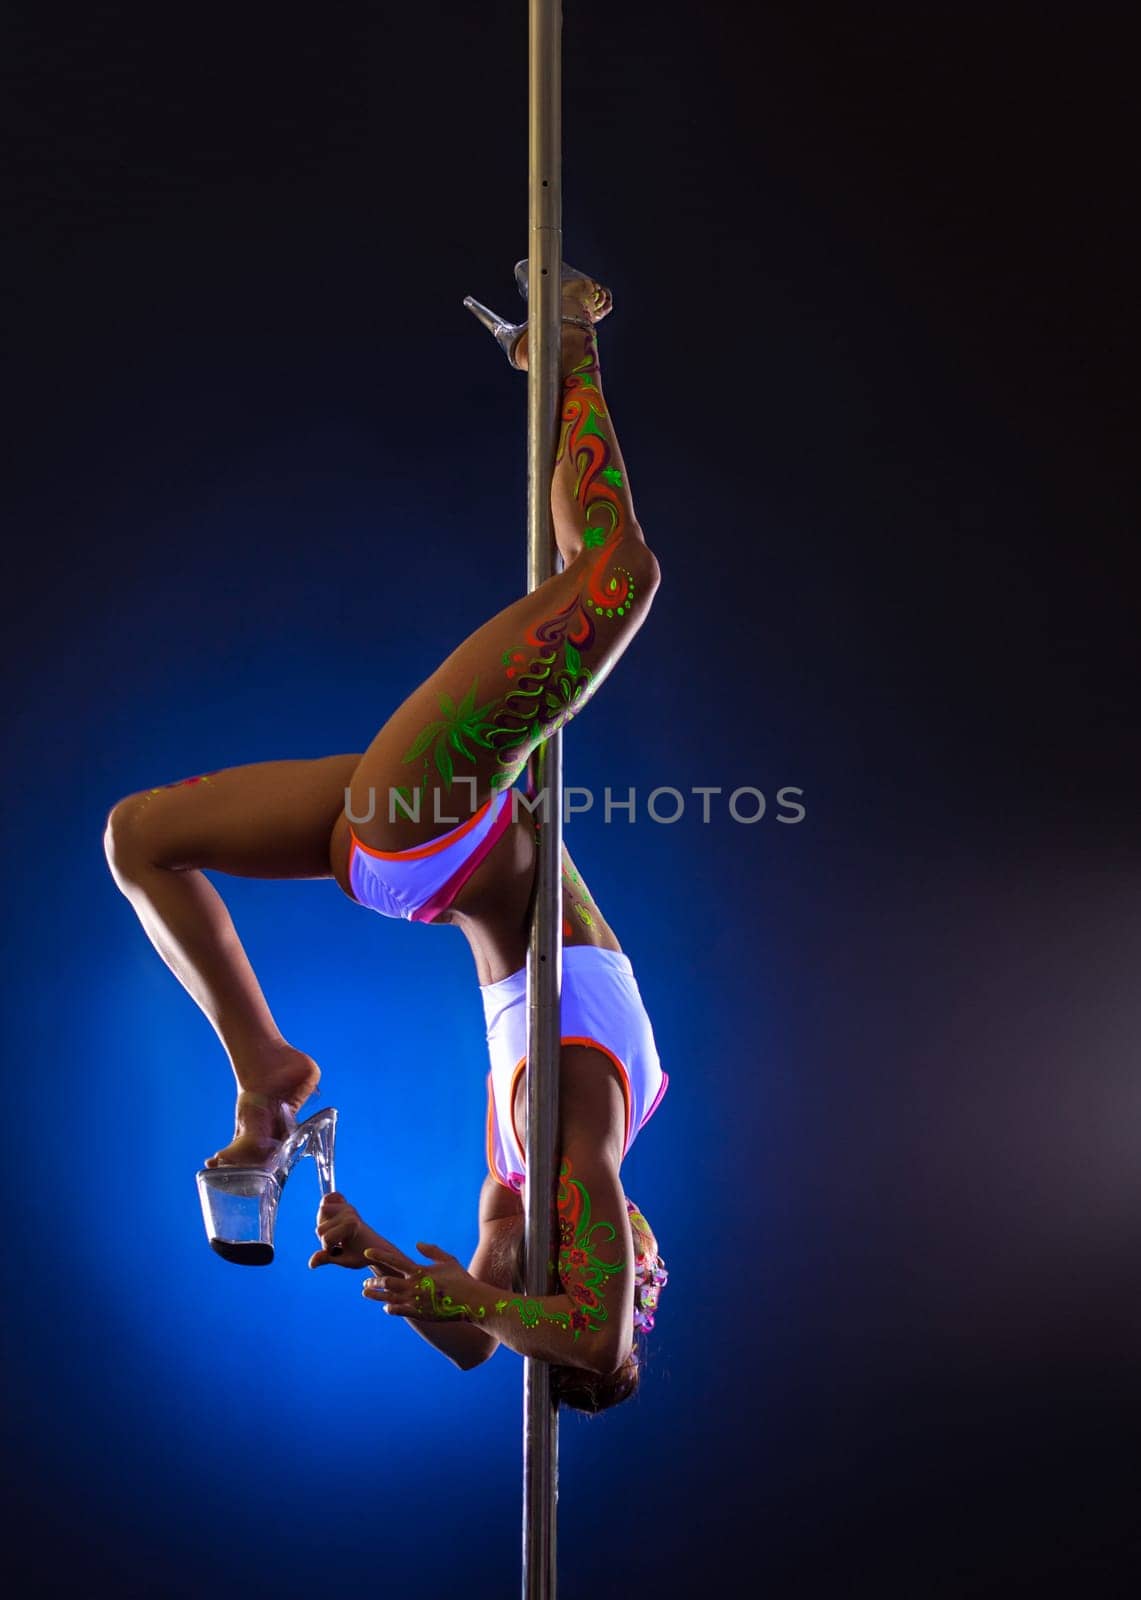 Flexible female dancer hangs upside down on pole